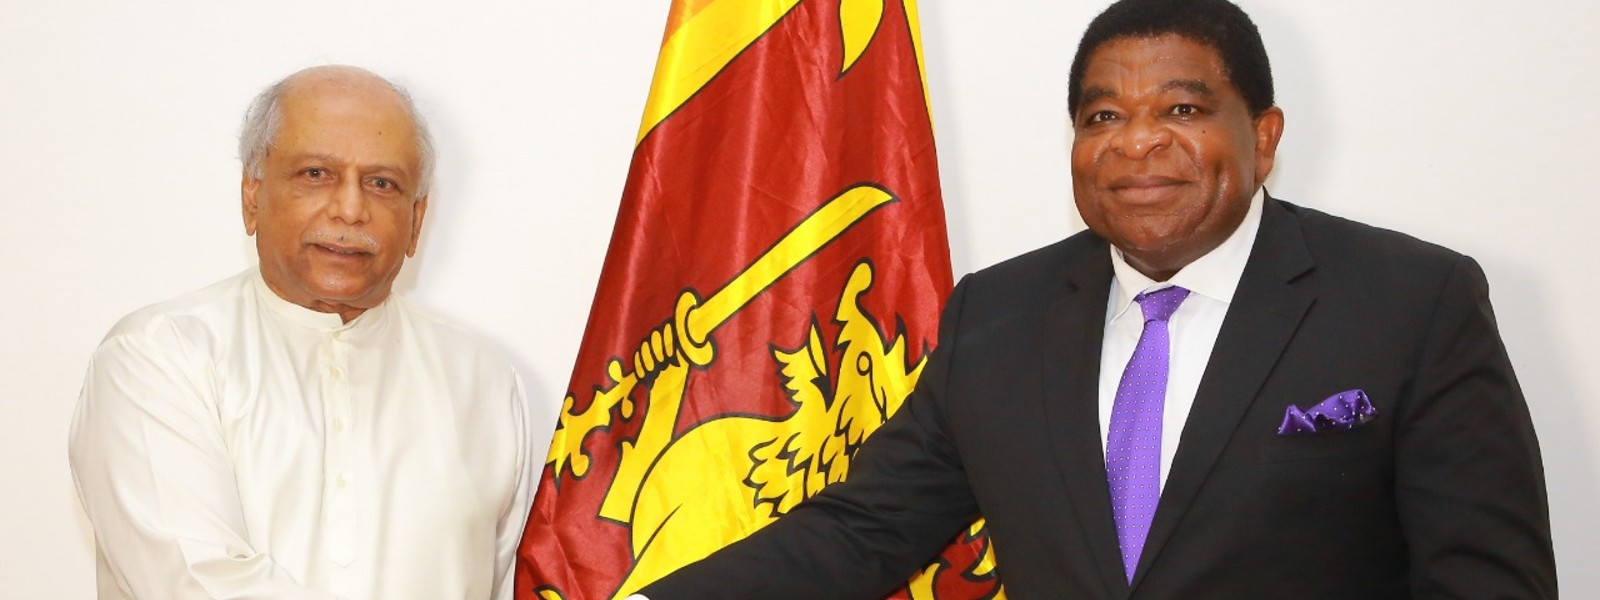 IPU Secretary-General meets Sri Lanka PM